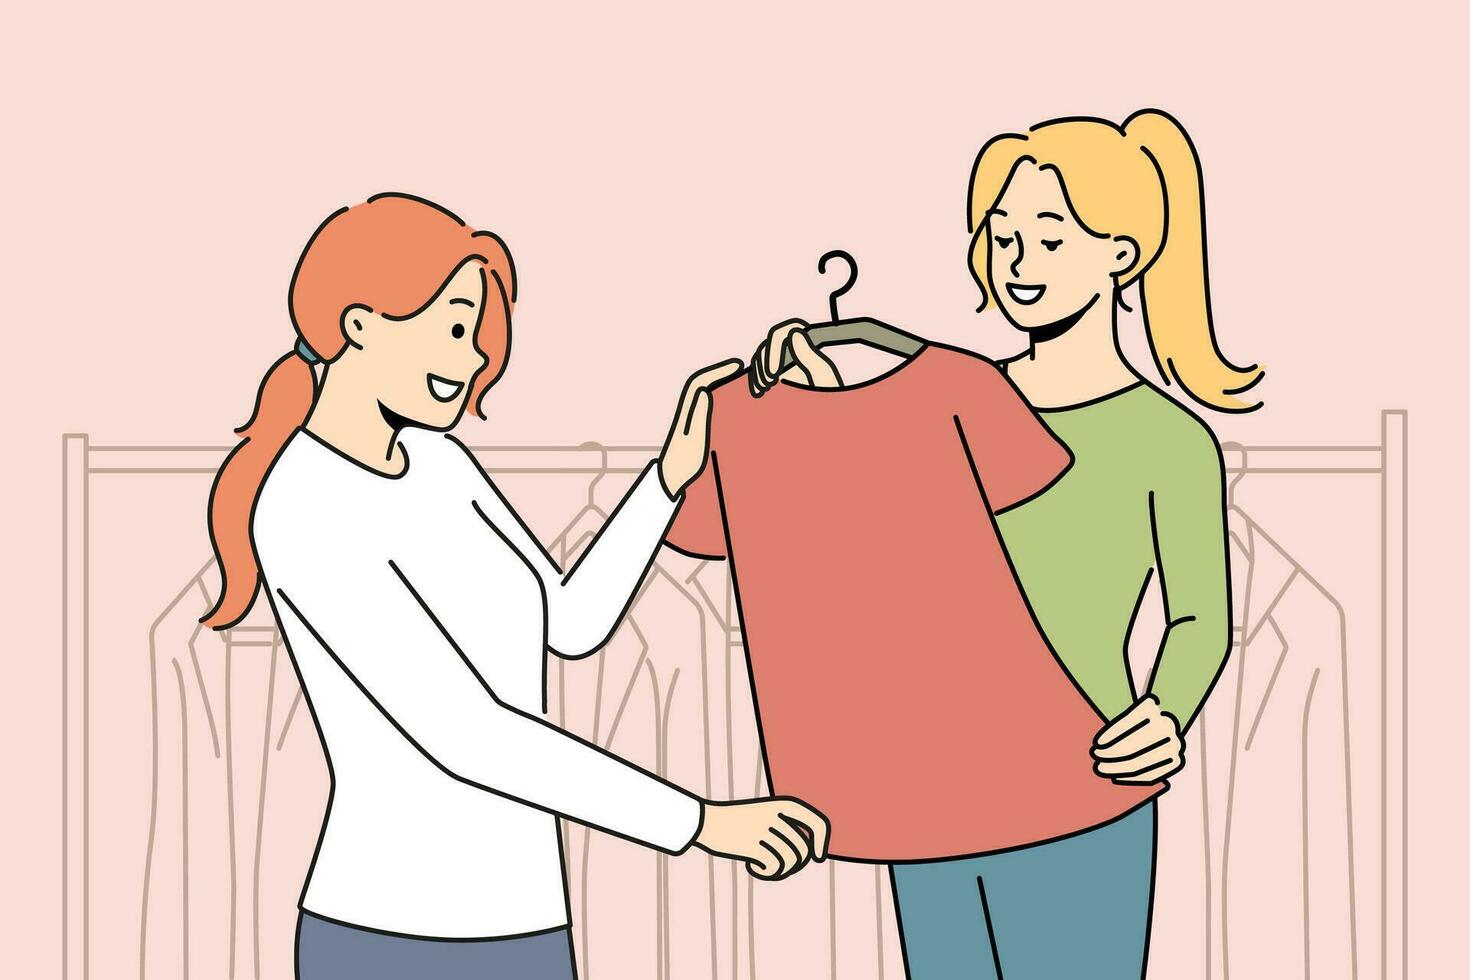 souriant consultant Aidez-moi client avec vêtements choisir dans magasin. femme acheter vêtements dans boutique. mode et consumérisme. vecteur illustration.